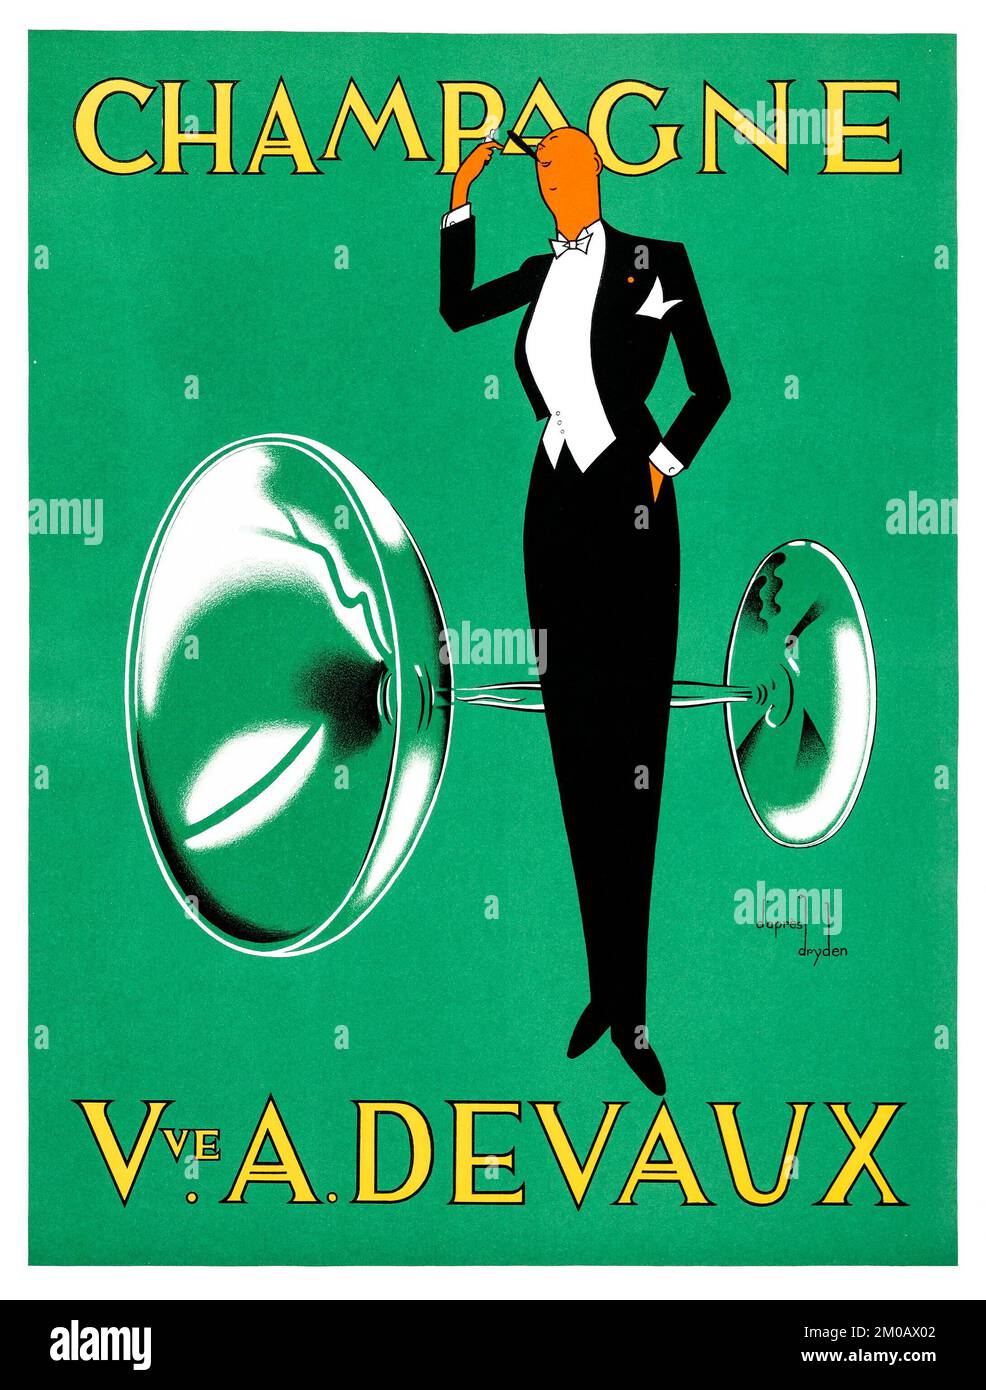 Veuve A. Devaux Champagne (c. 1930s). Cartel publicitario francés - Ernst Deutsch Dryden Artwork Foto de stock